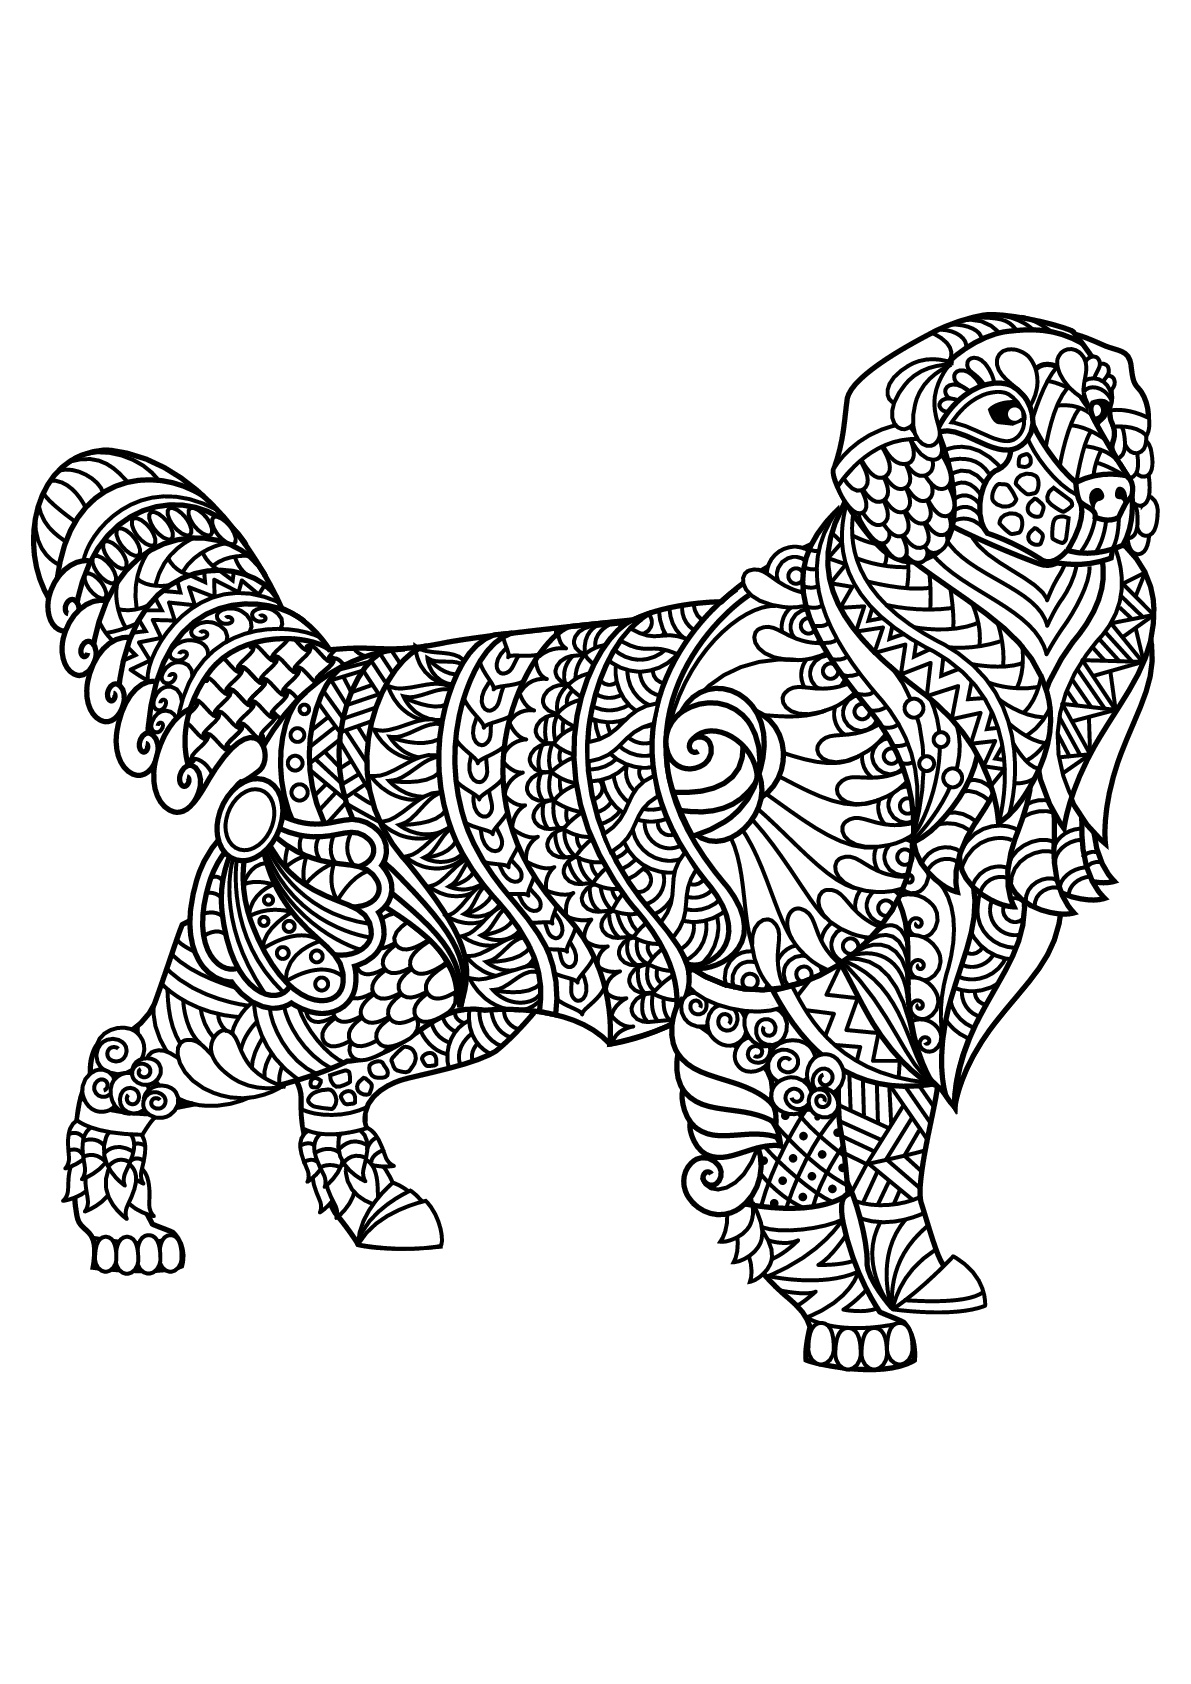 Labrador, con patrones armoniosos y complejos